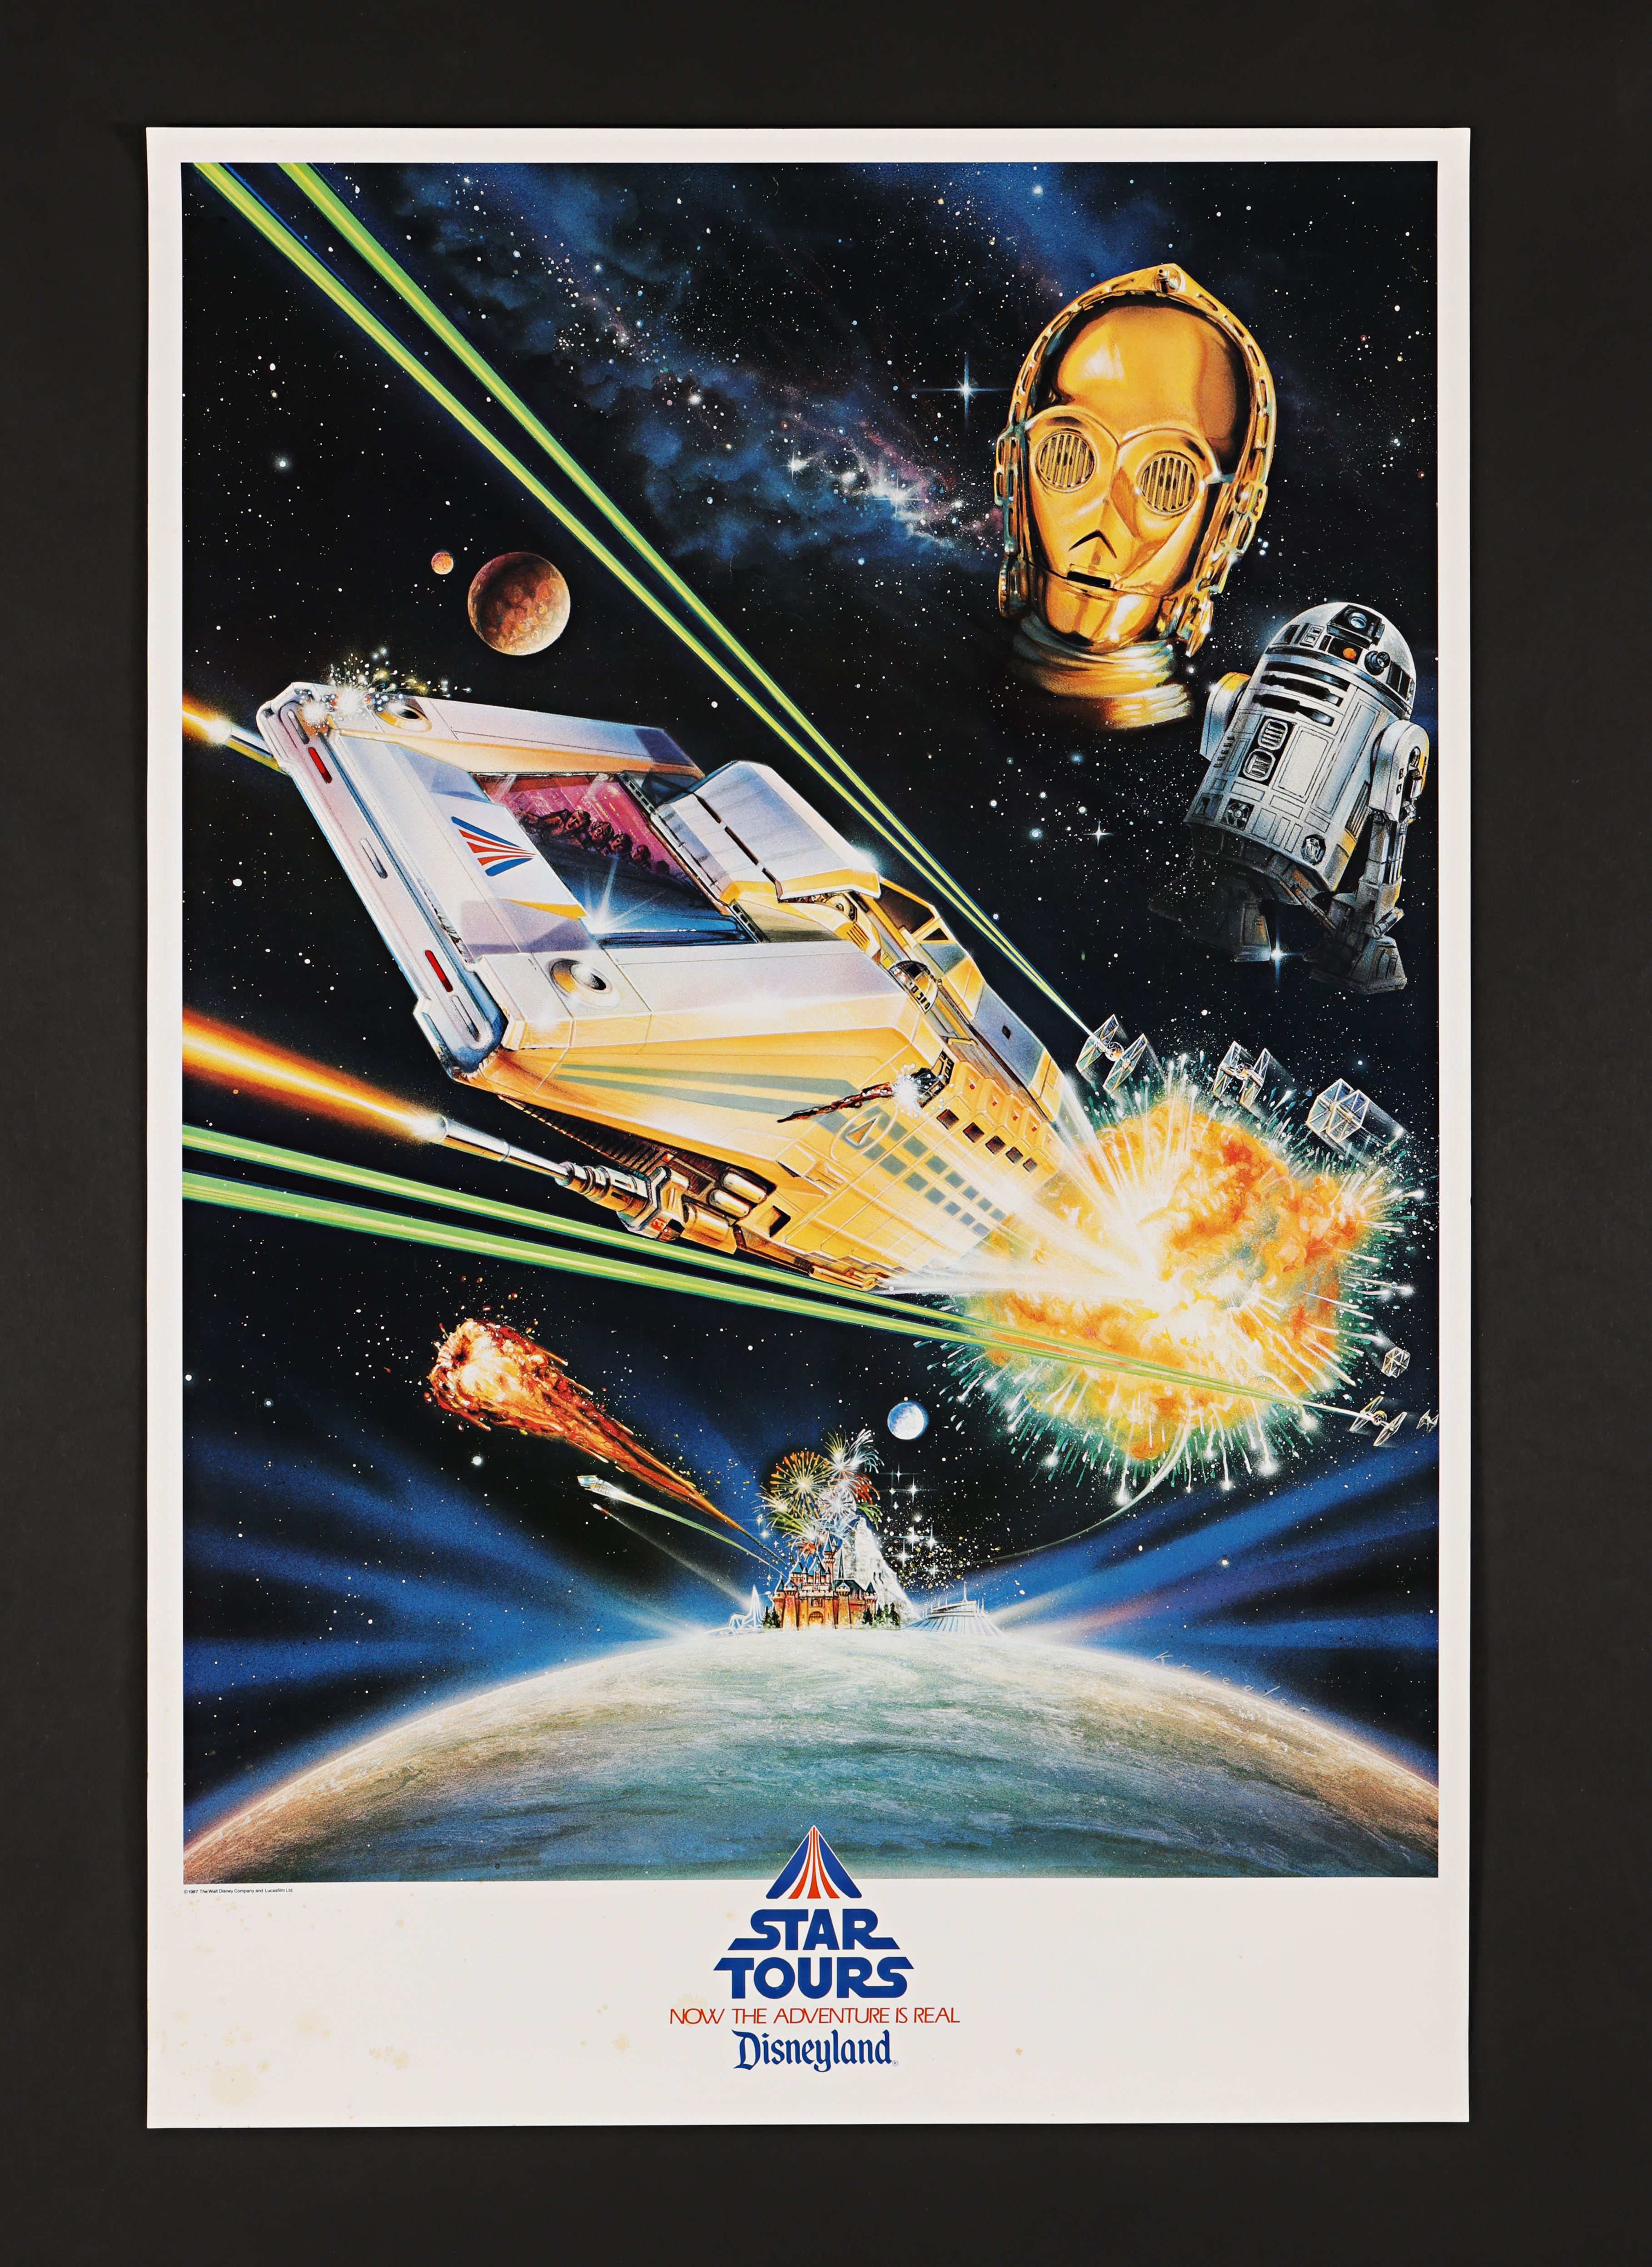 STAR WARS: STAR TOURS (1987) - Star Tours Disneyland Poster, 1987